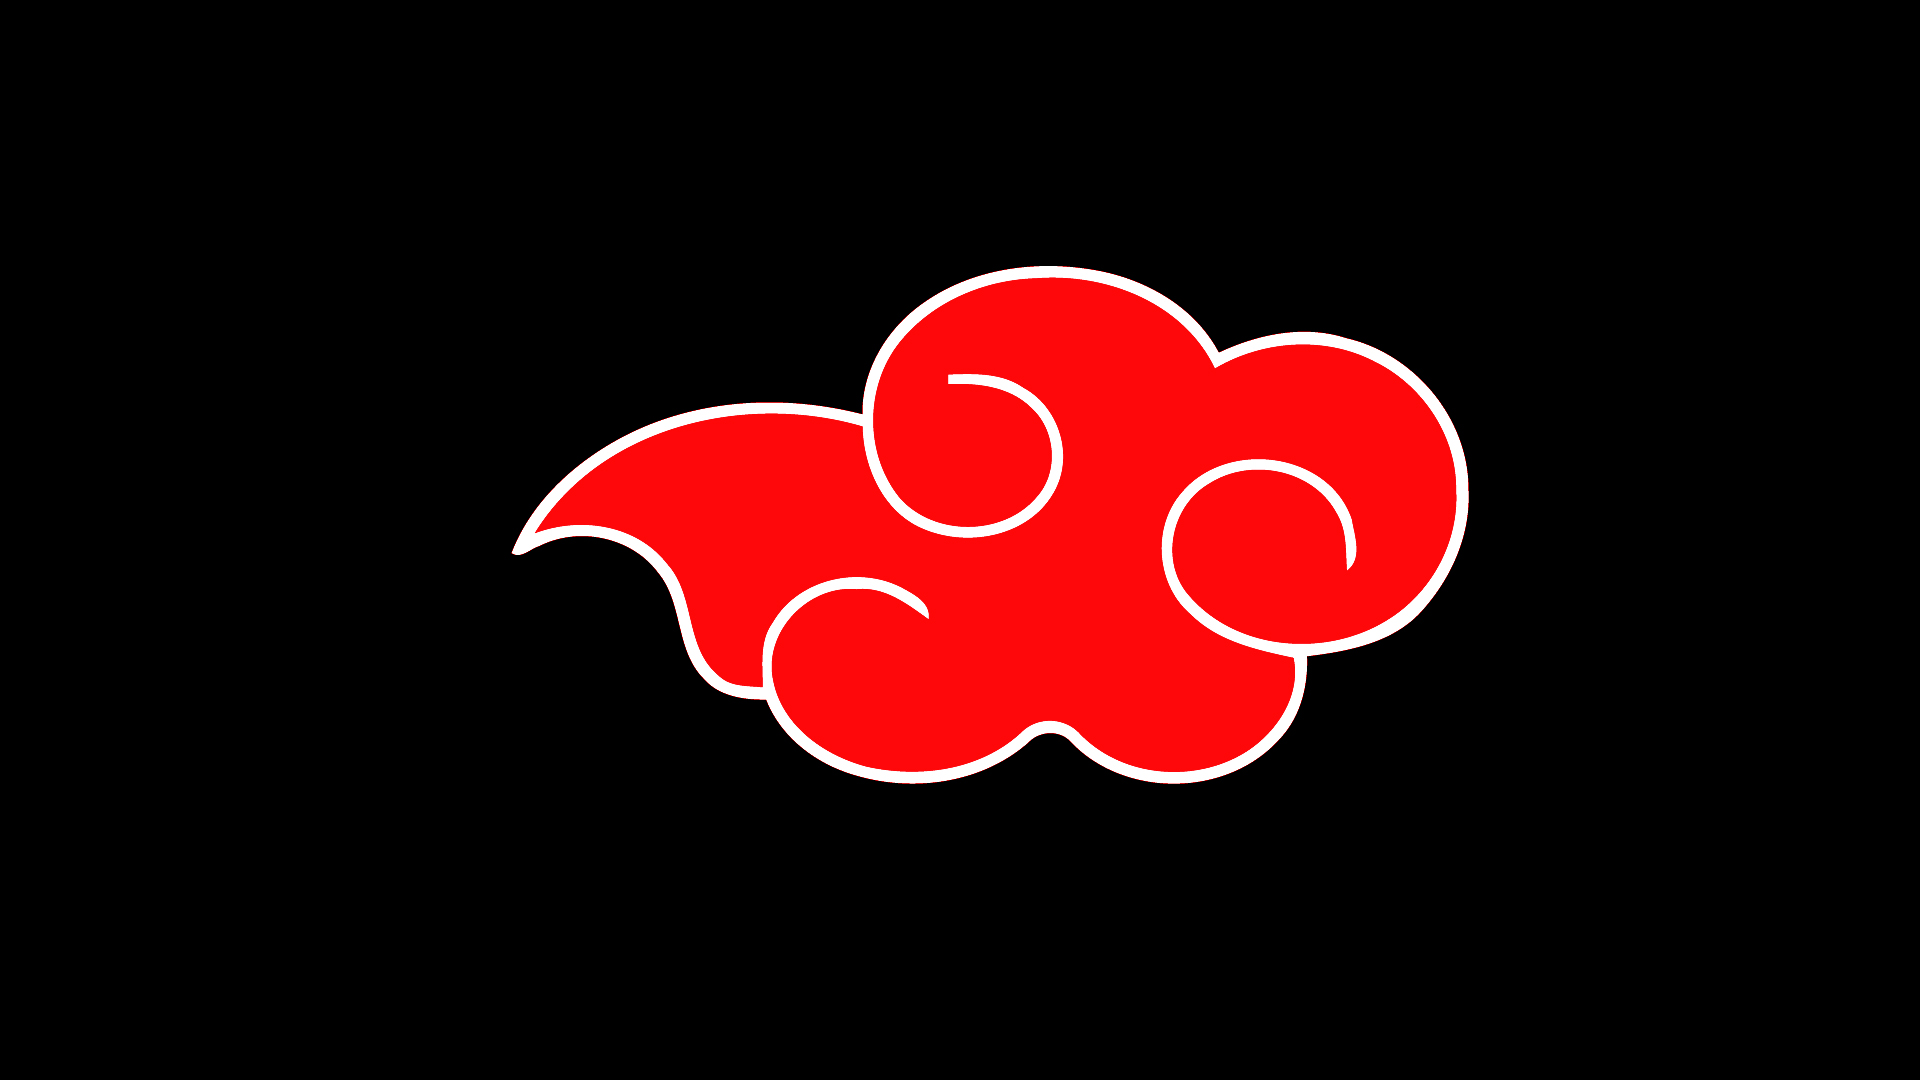 wallpapers akatsuki logo cloud hd 187801 6 1920x1080 187802